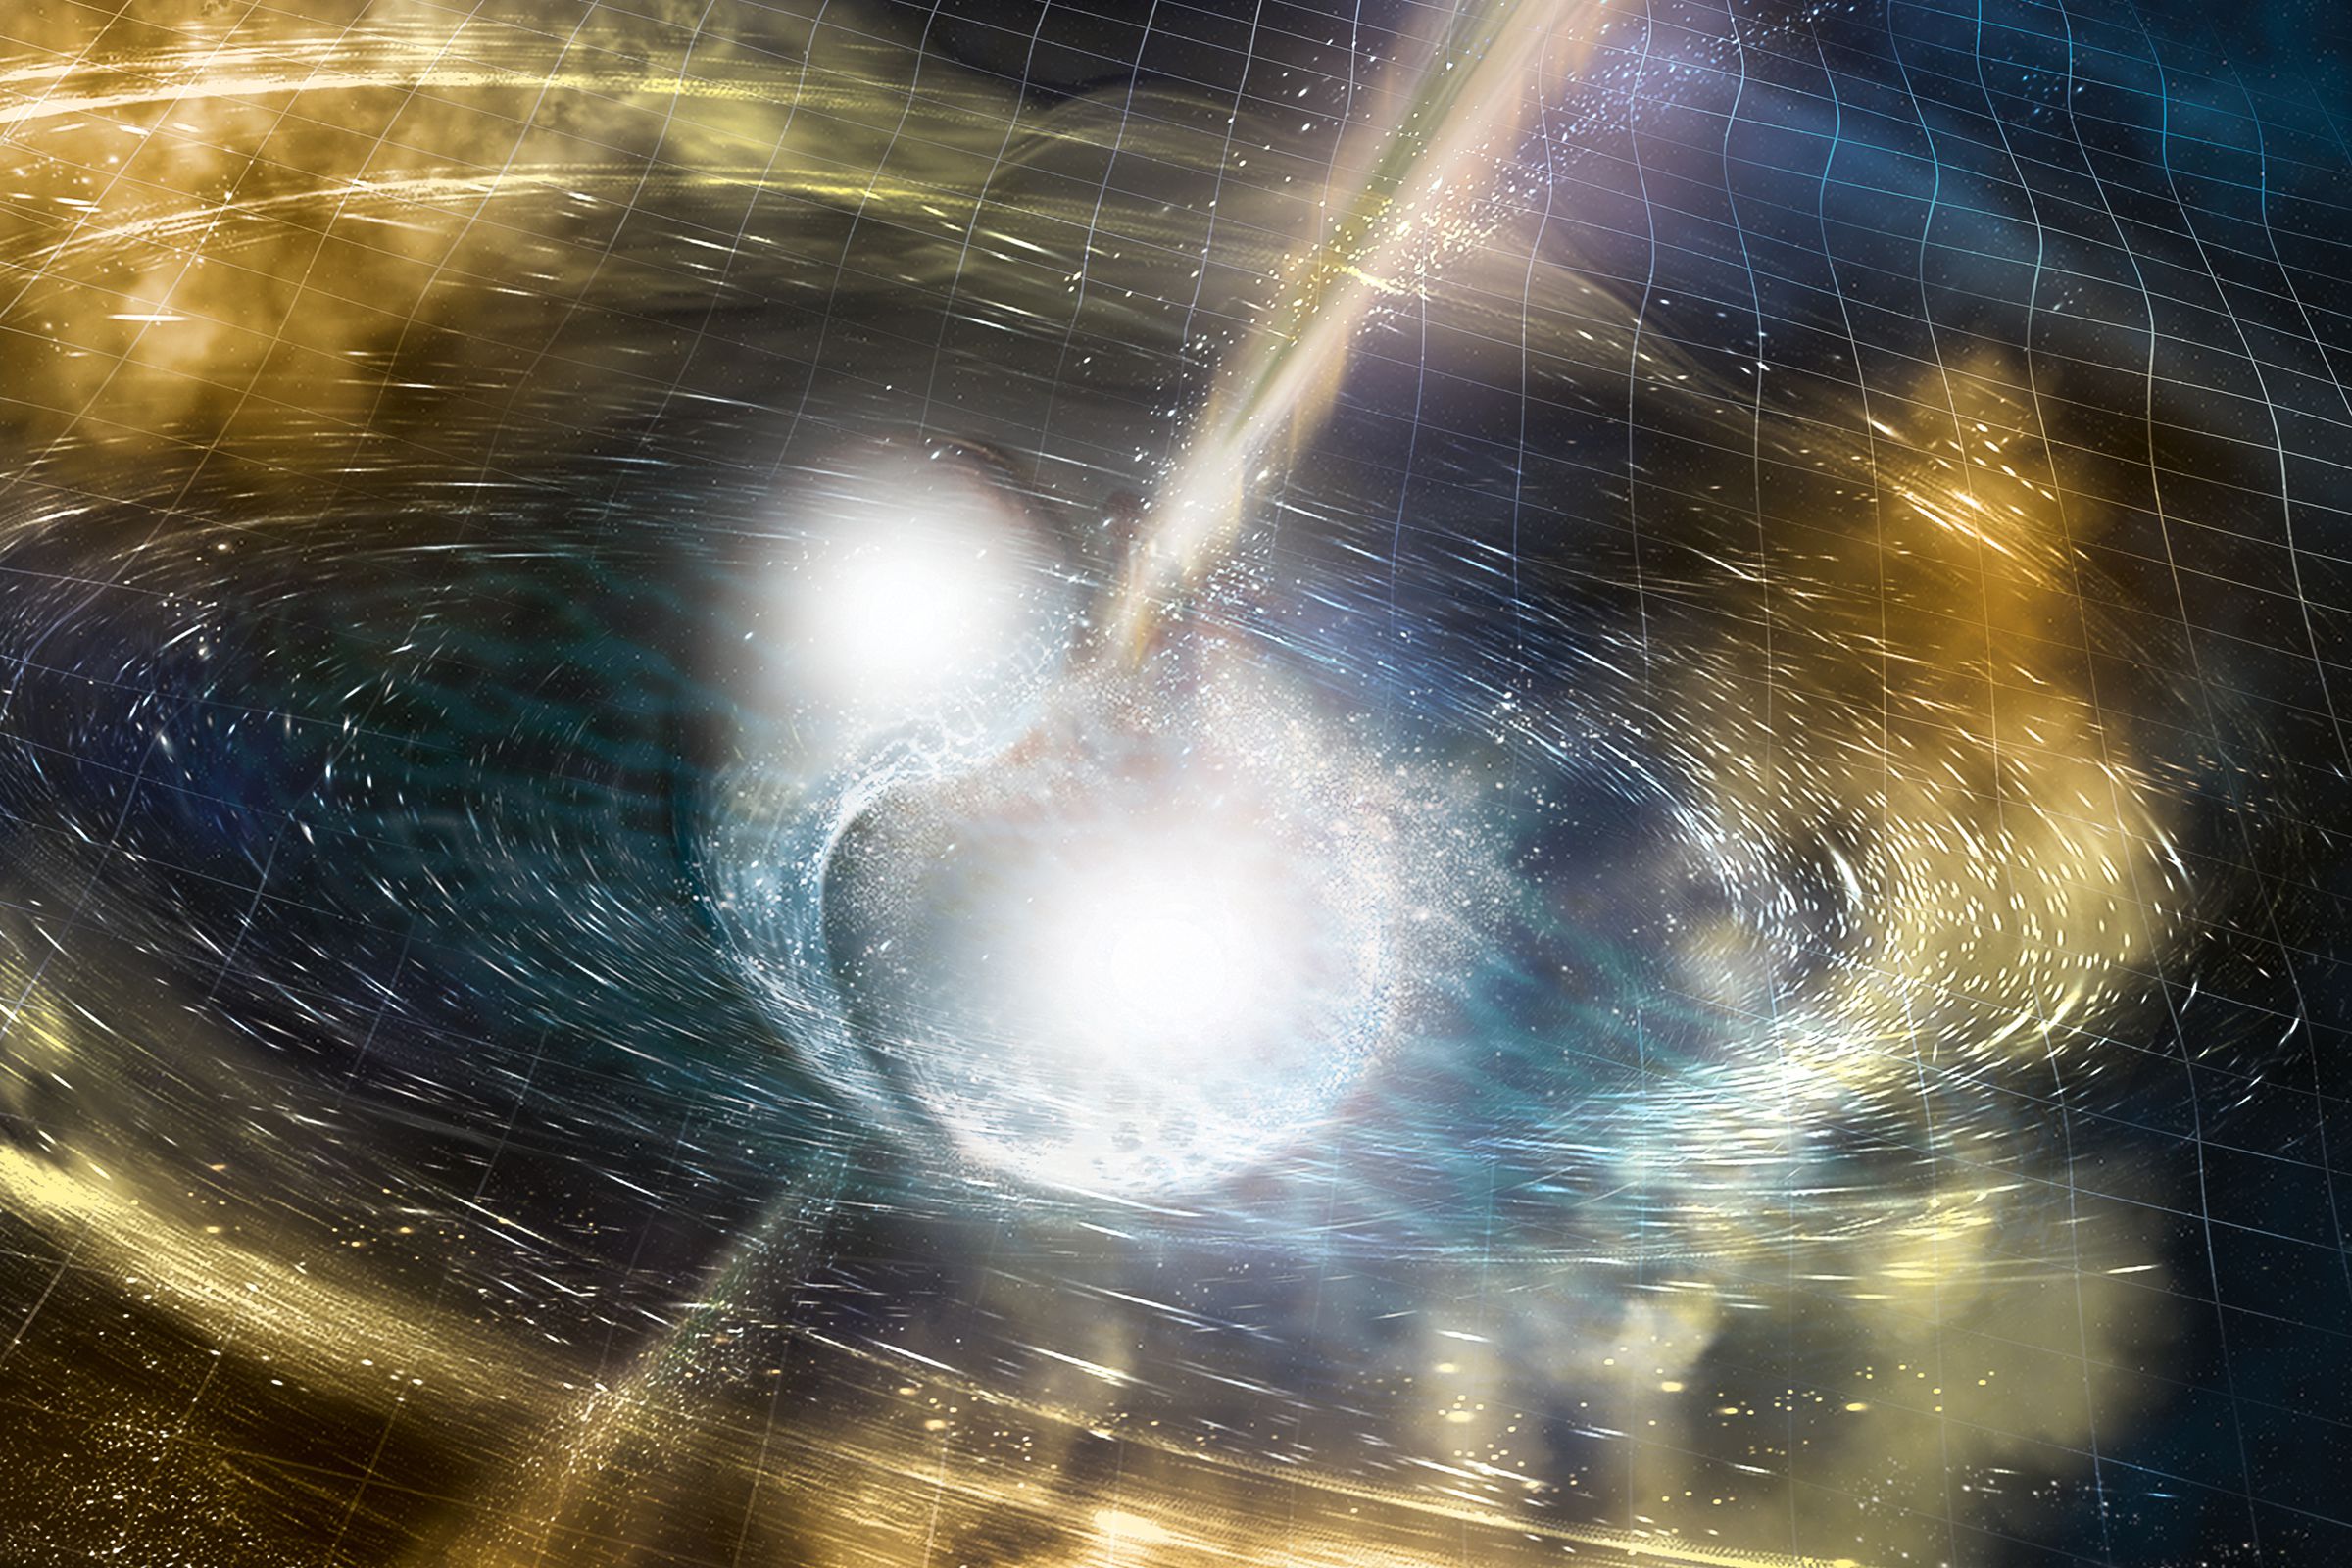 A rendering of a neutron star merger